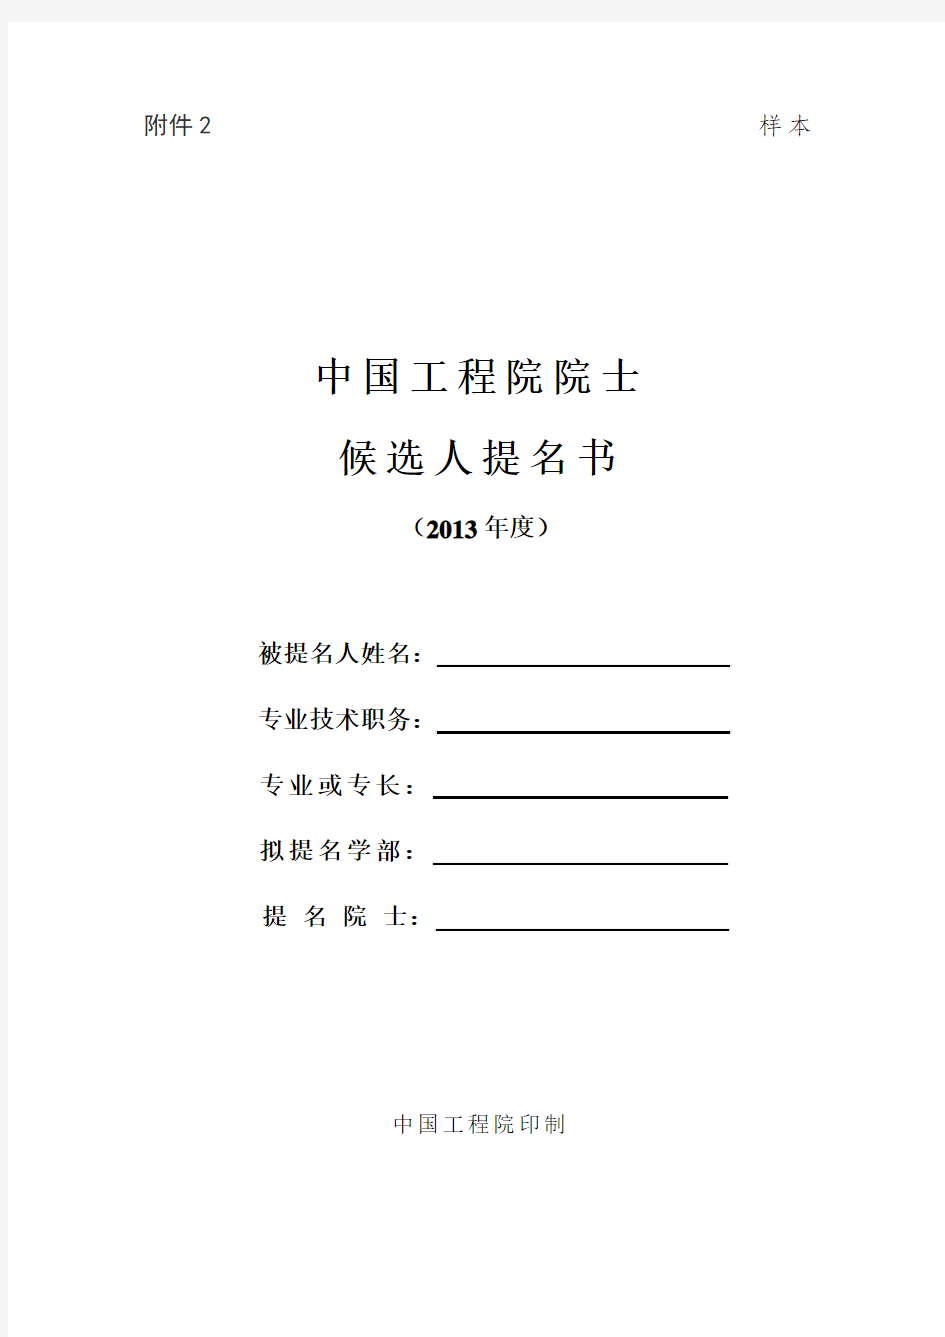 中国工程院院士候选人提名书(样本)